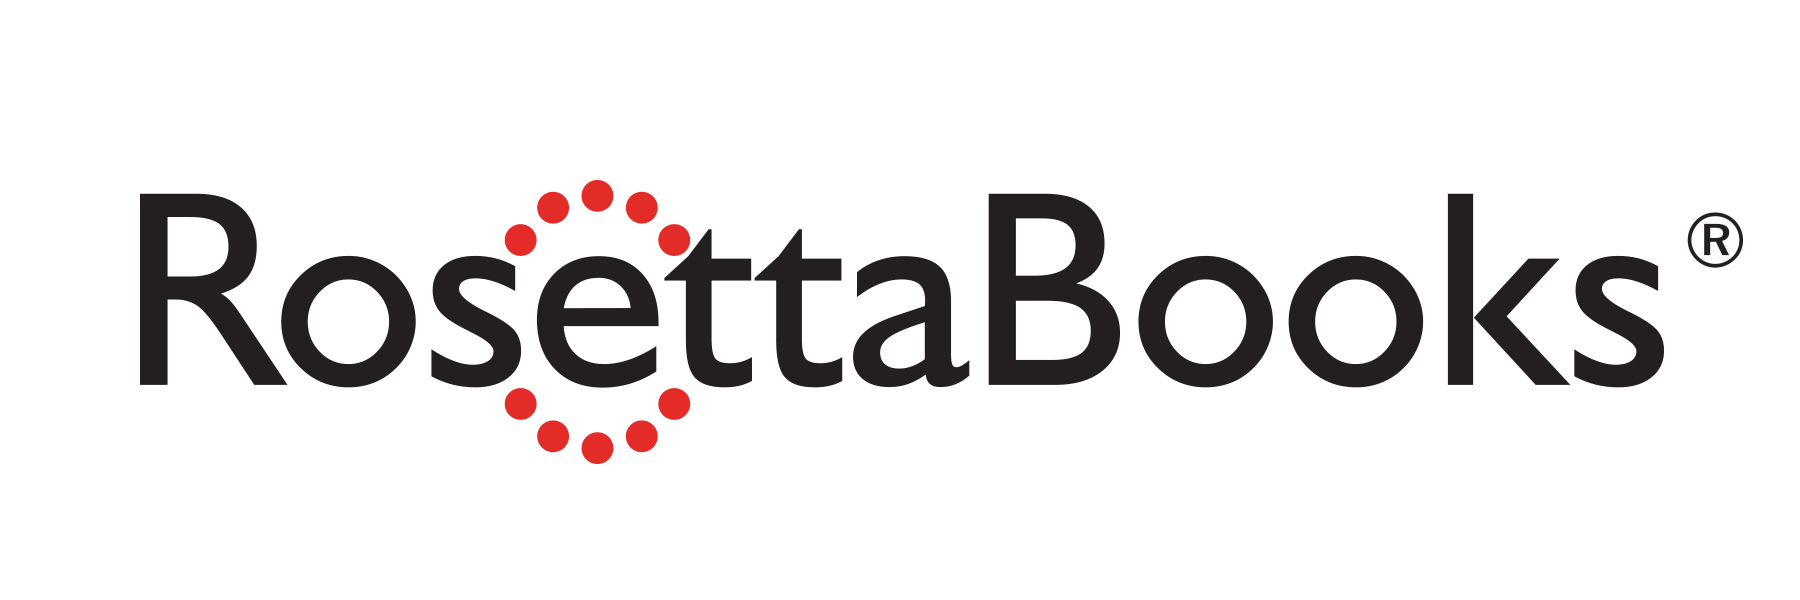 RosettaBooks_Logo_JPEG.jpg